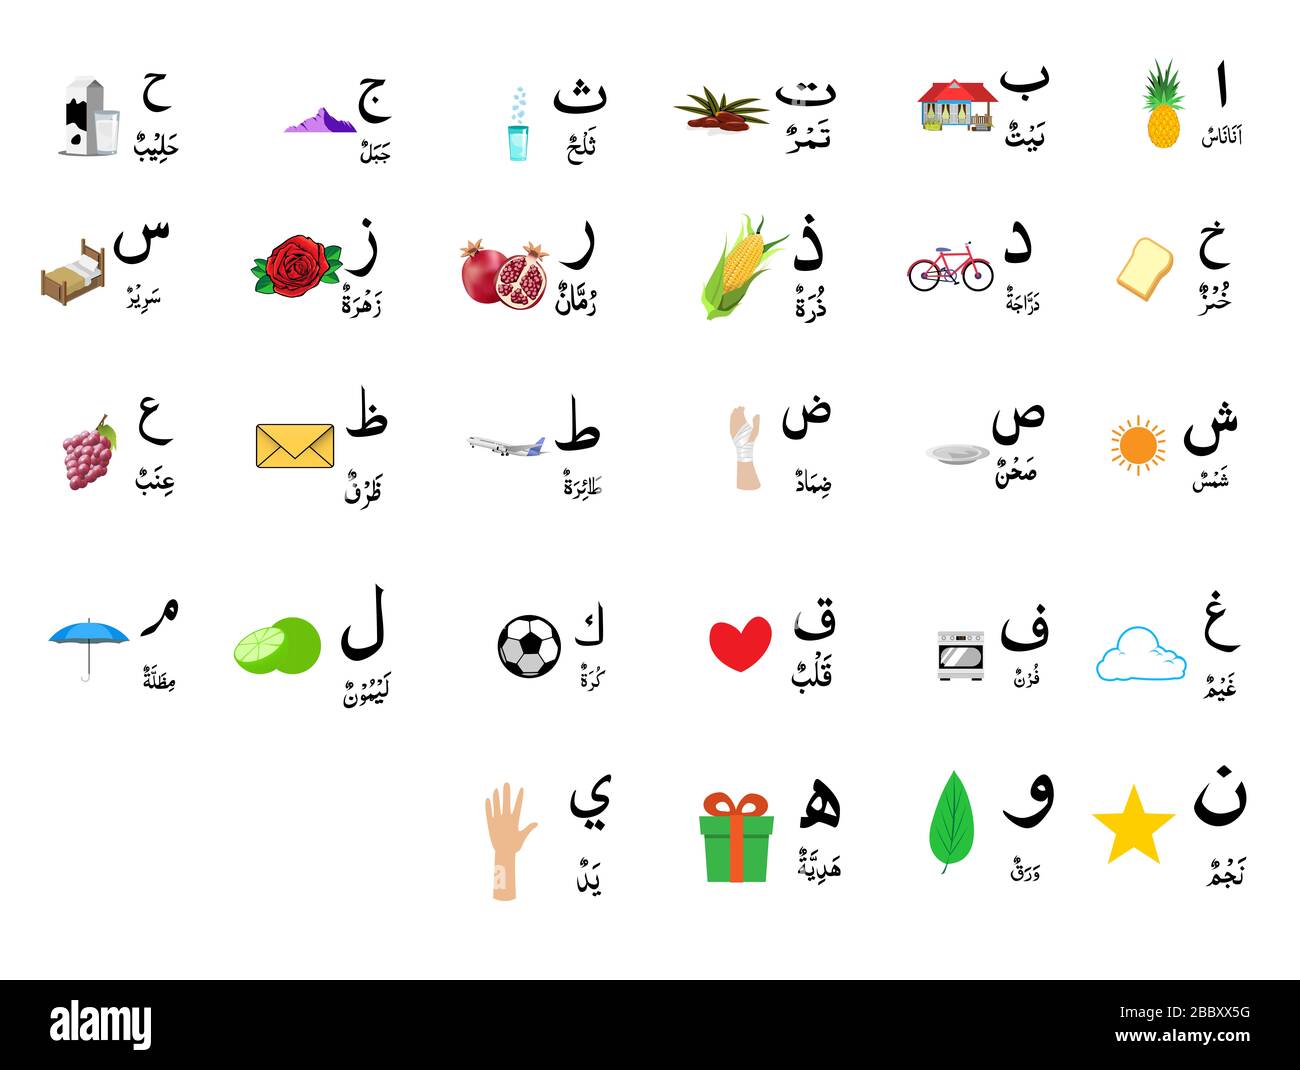 Ensemble d'alphabet arabe avec image , vecteur Banque D'Images